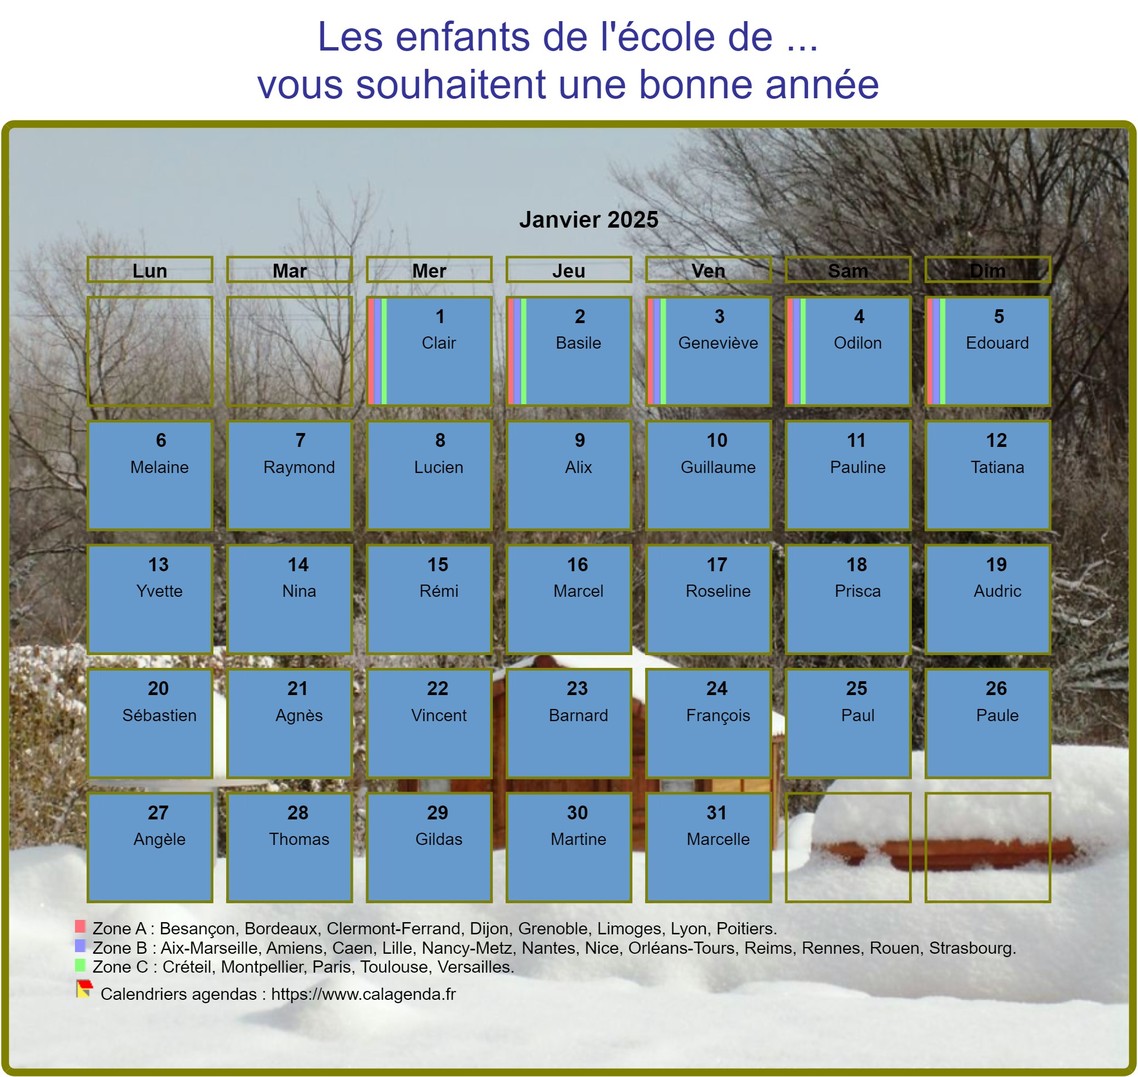 Calendrier 2025 agenda mensuel artistique avec photo et légende, paysage hivernal